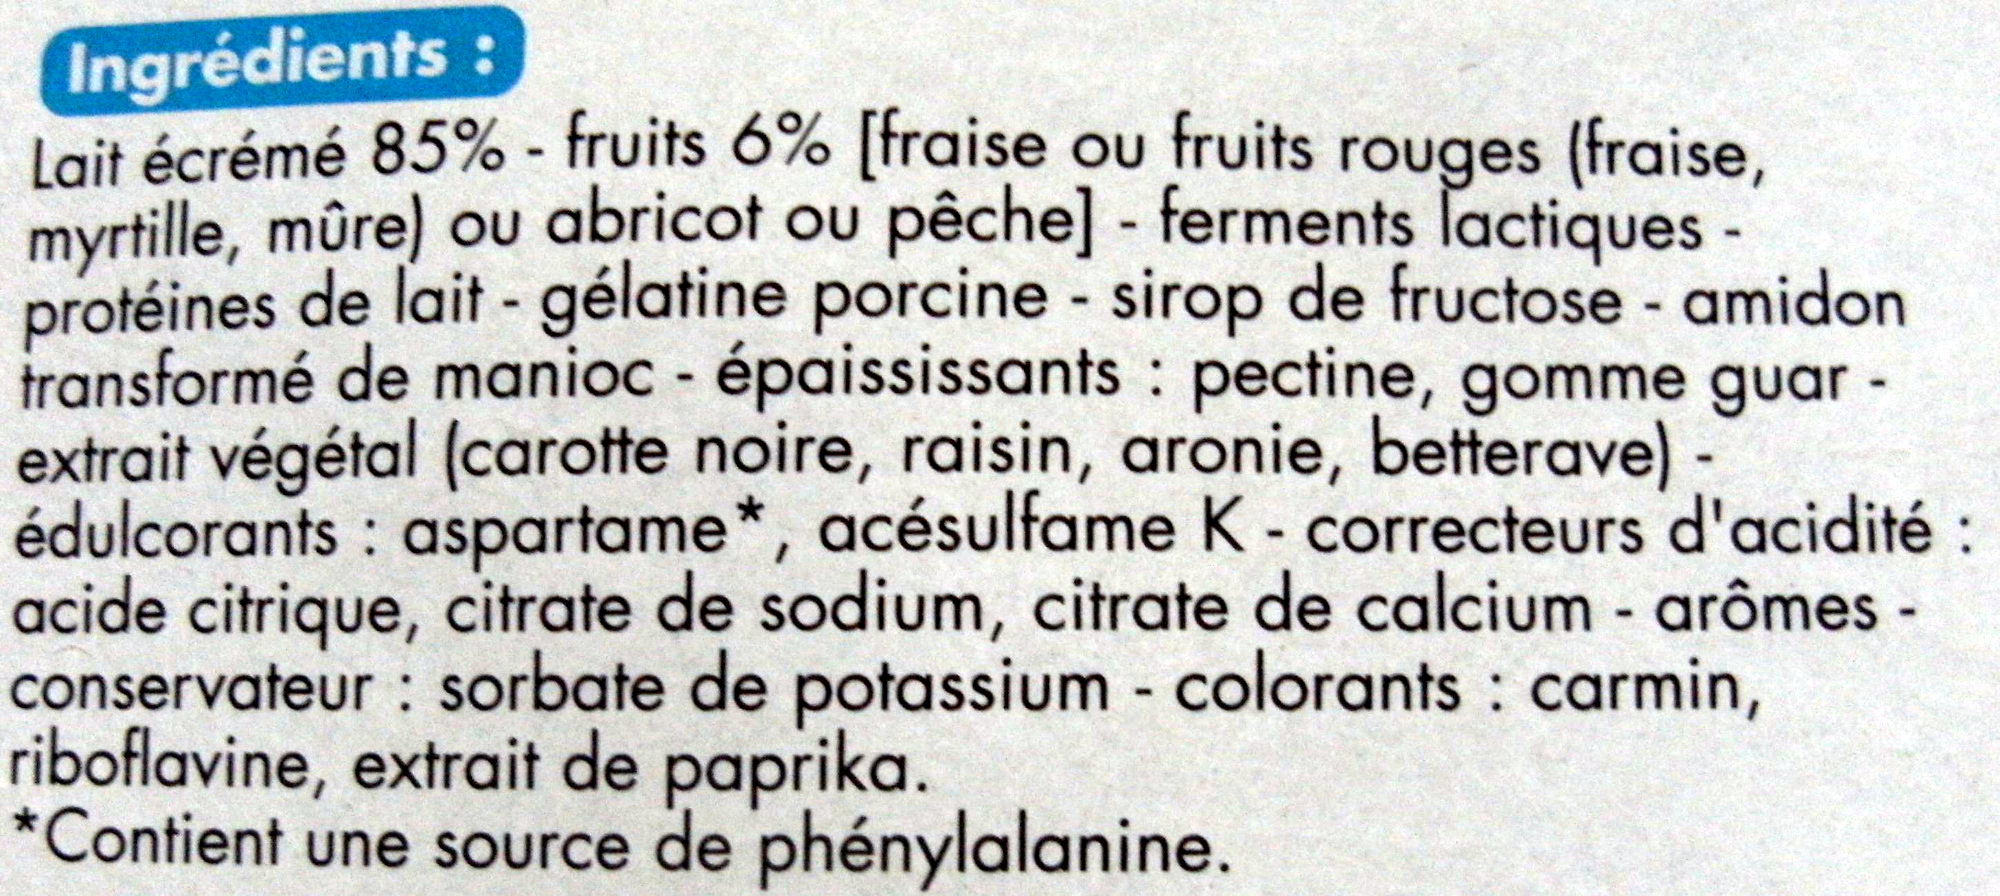 Spécialités laitières aux fruits (0 % MG) Fraise, Fruits rouges, Abricot, Pêche (x 8) - Ingredients - fr